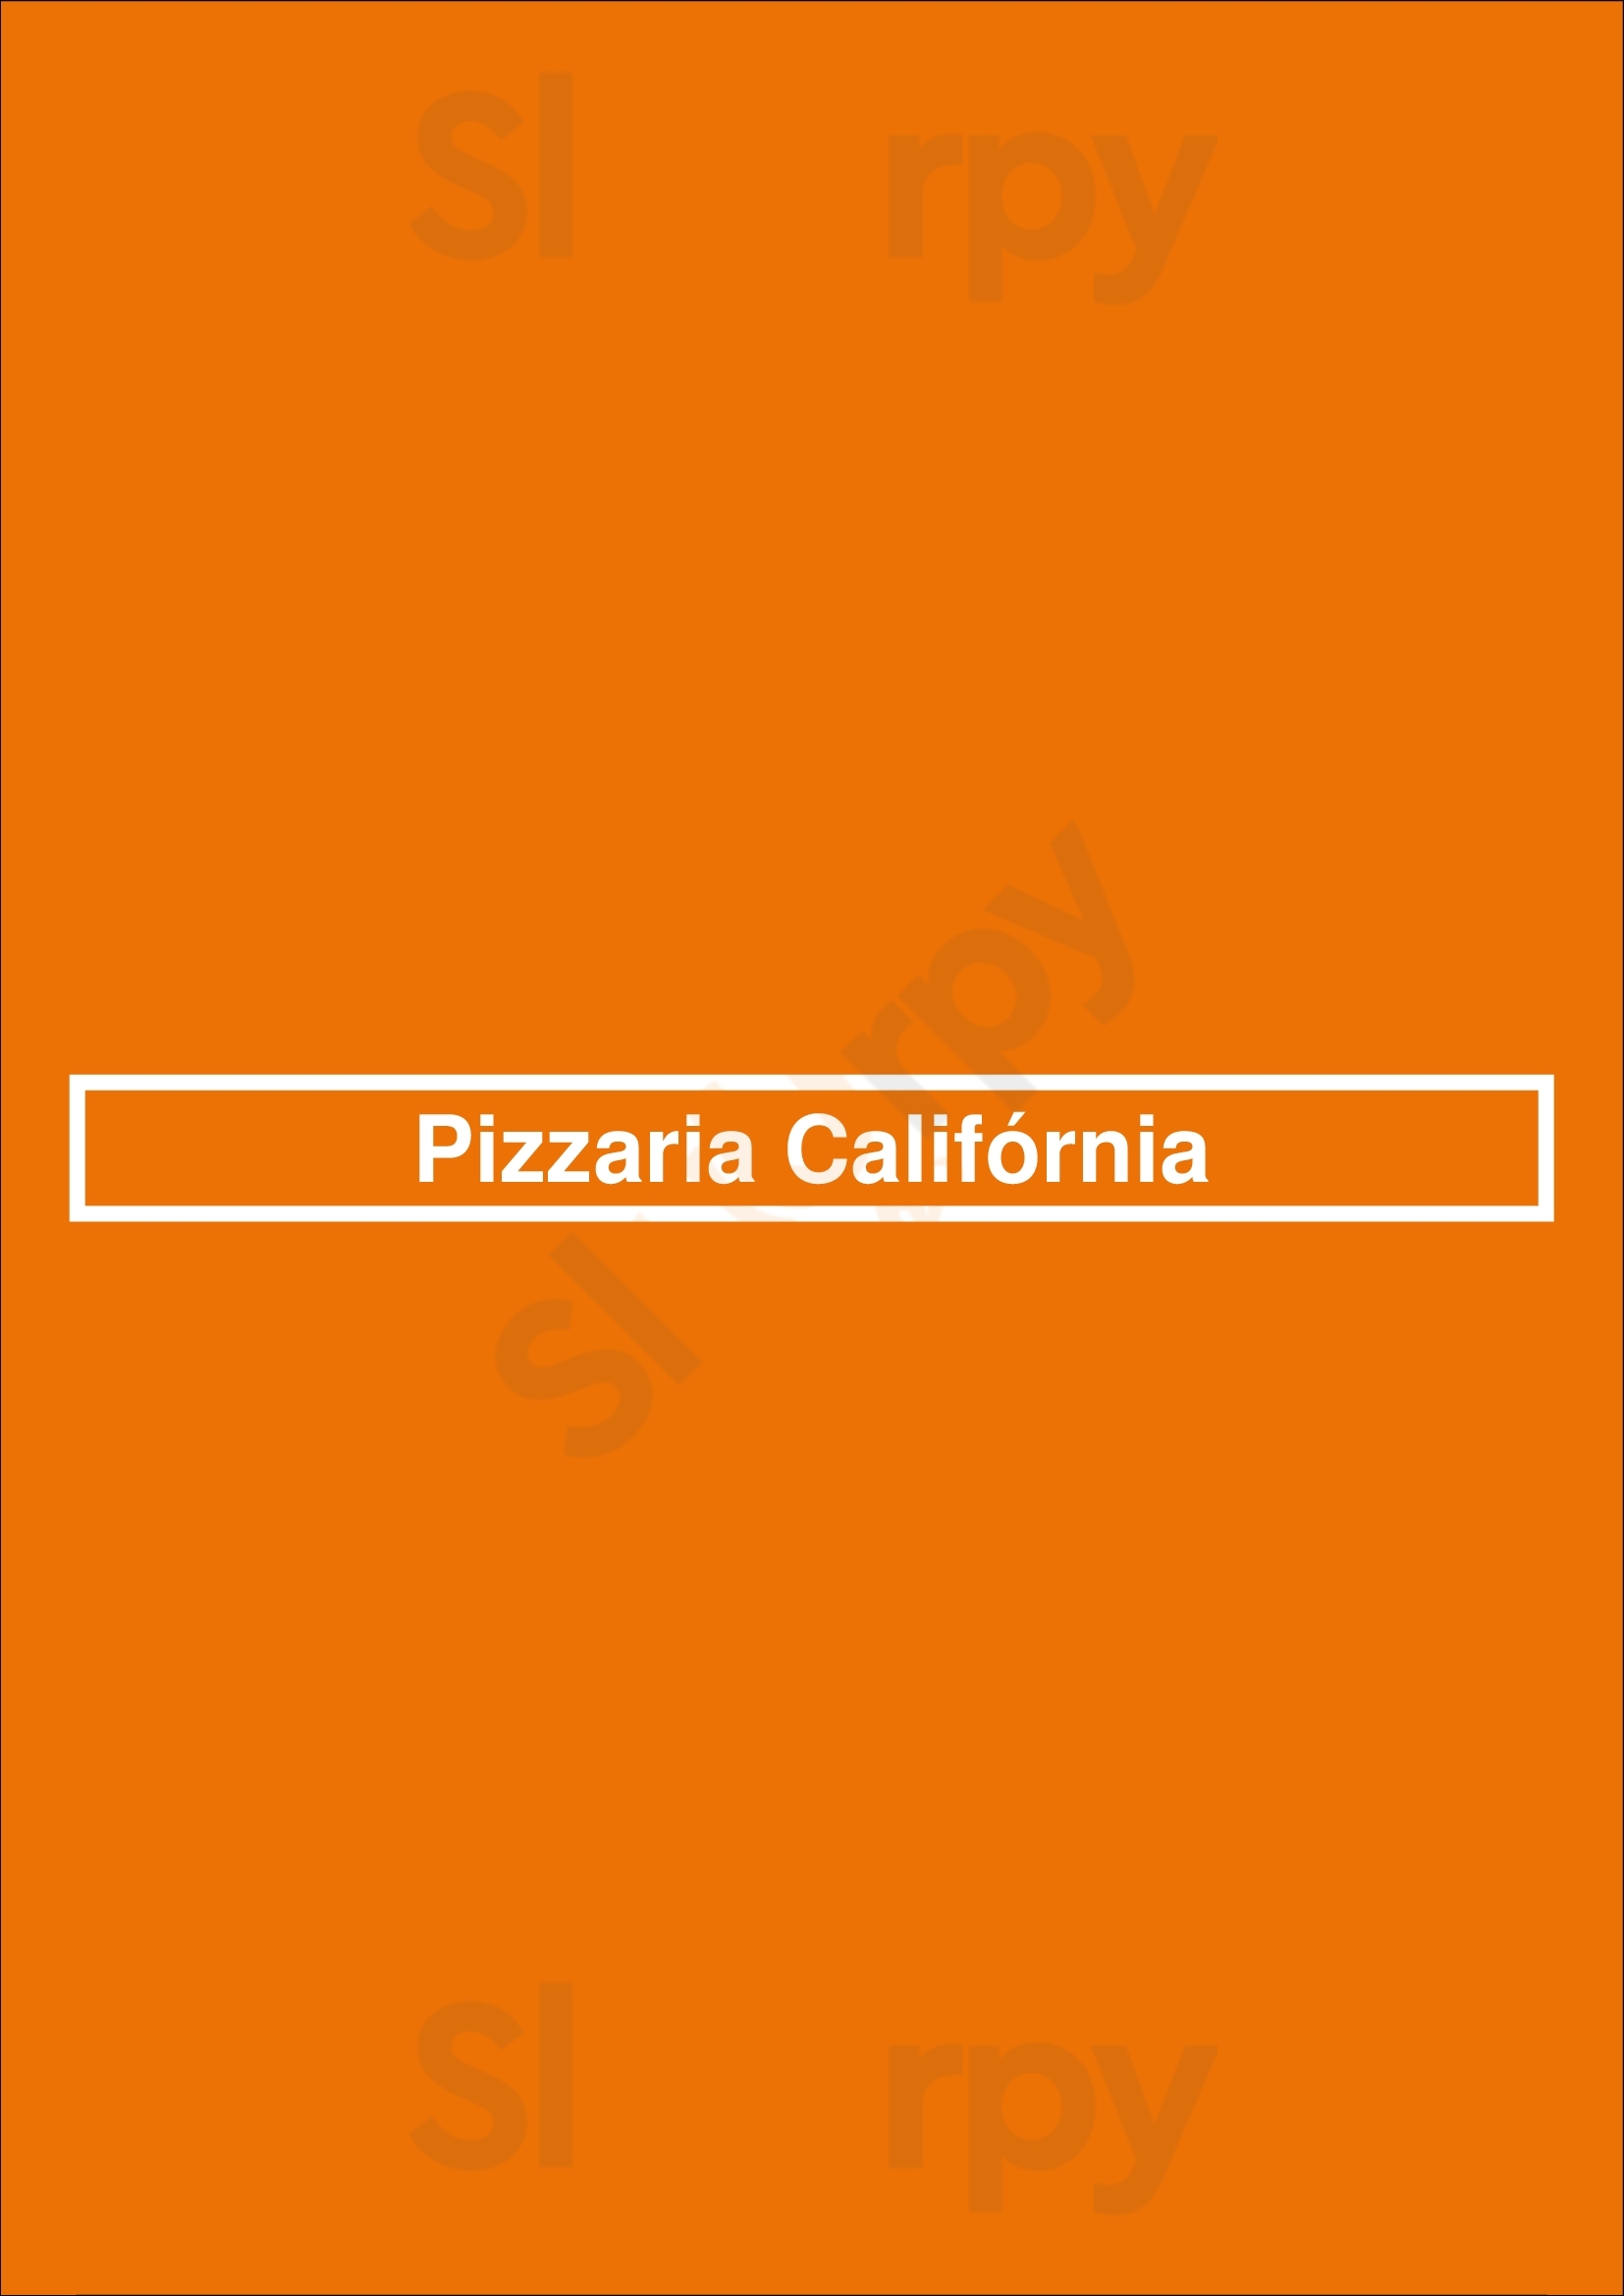 Pizzaria Califórnia Sintra Menu - 1